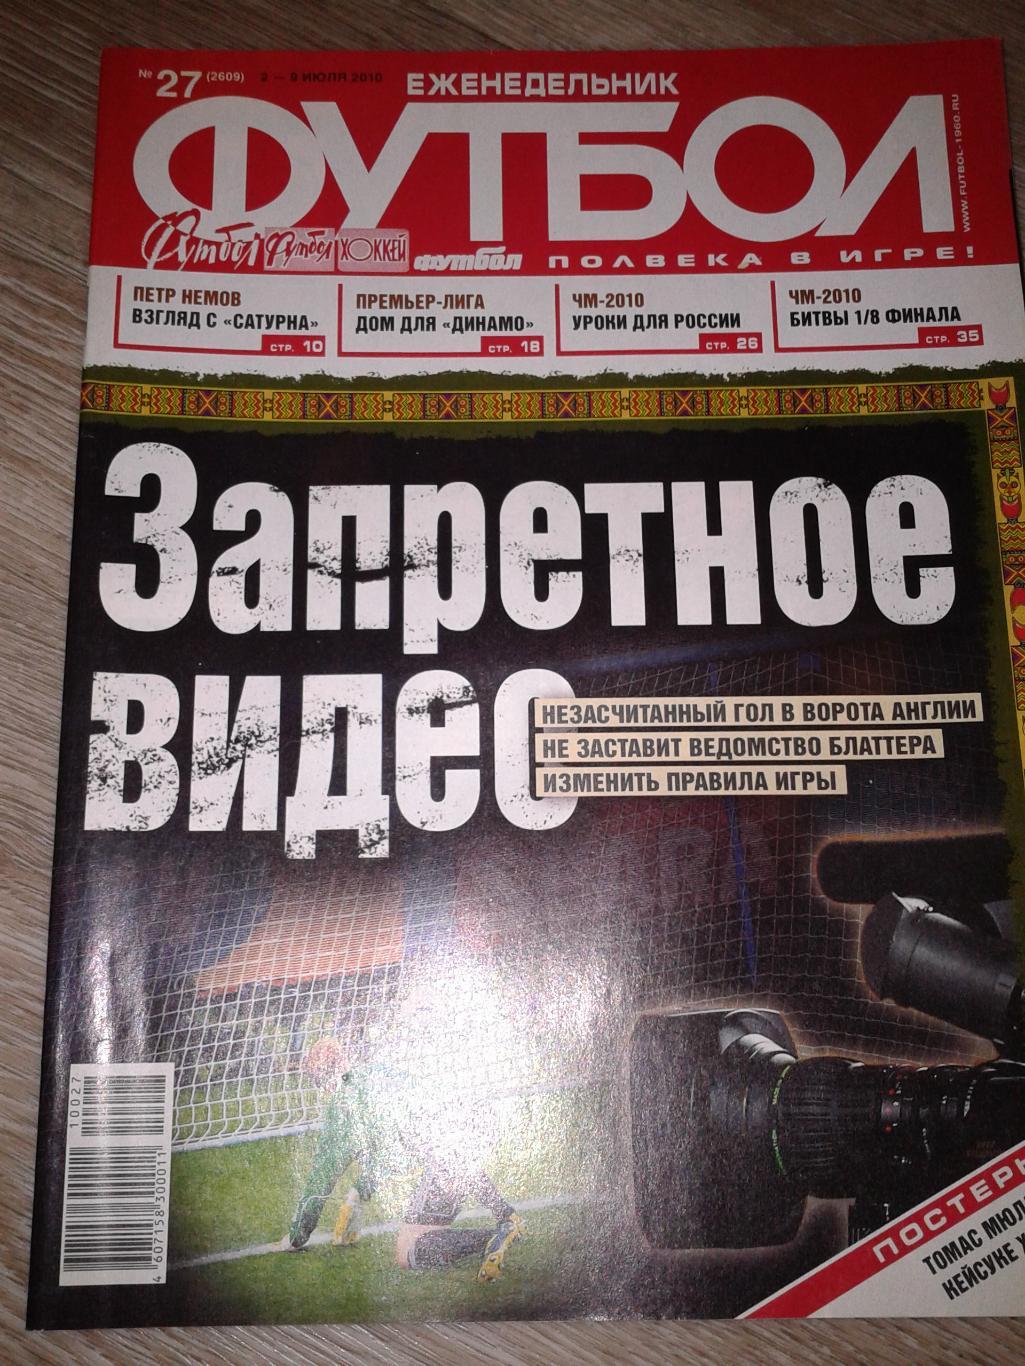 2010 Еженедельник Футбол №27